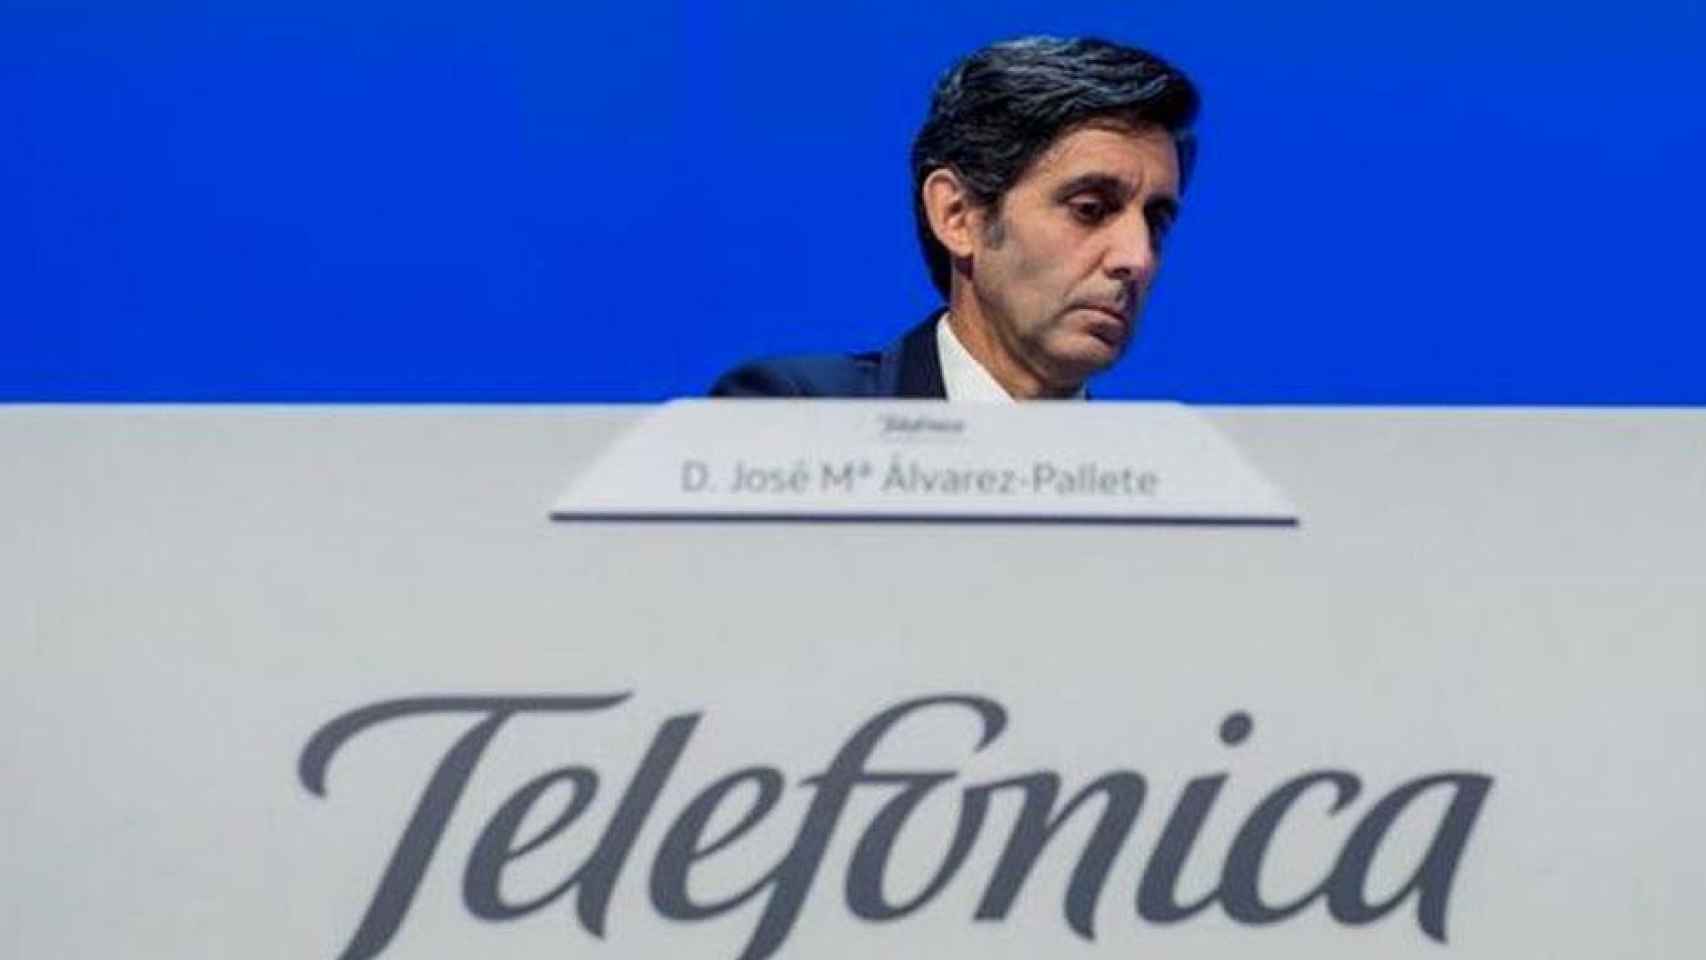 José María Álvarez-Pallete, presidente ejecutivo de Telefónica /EFE